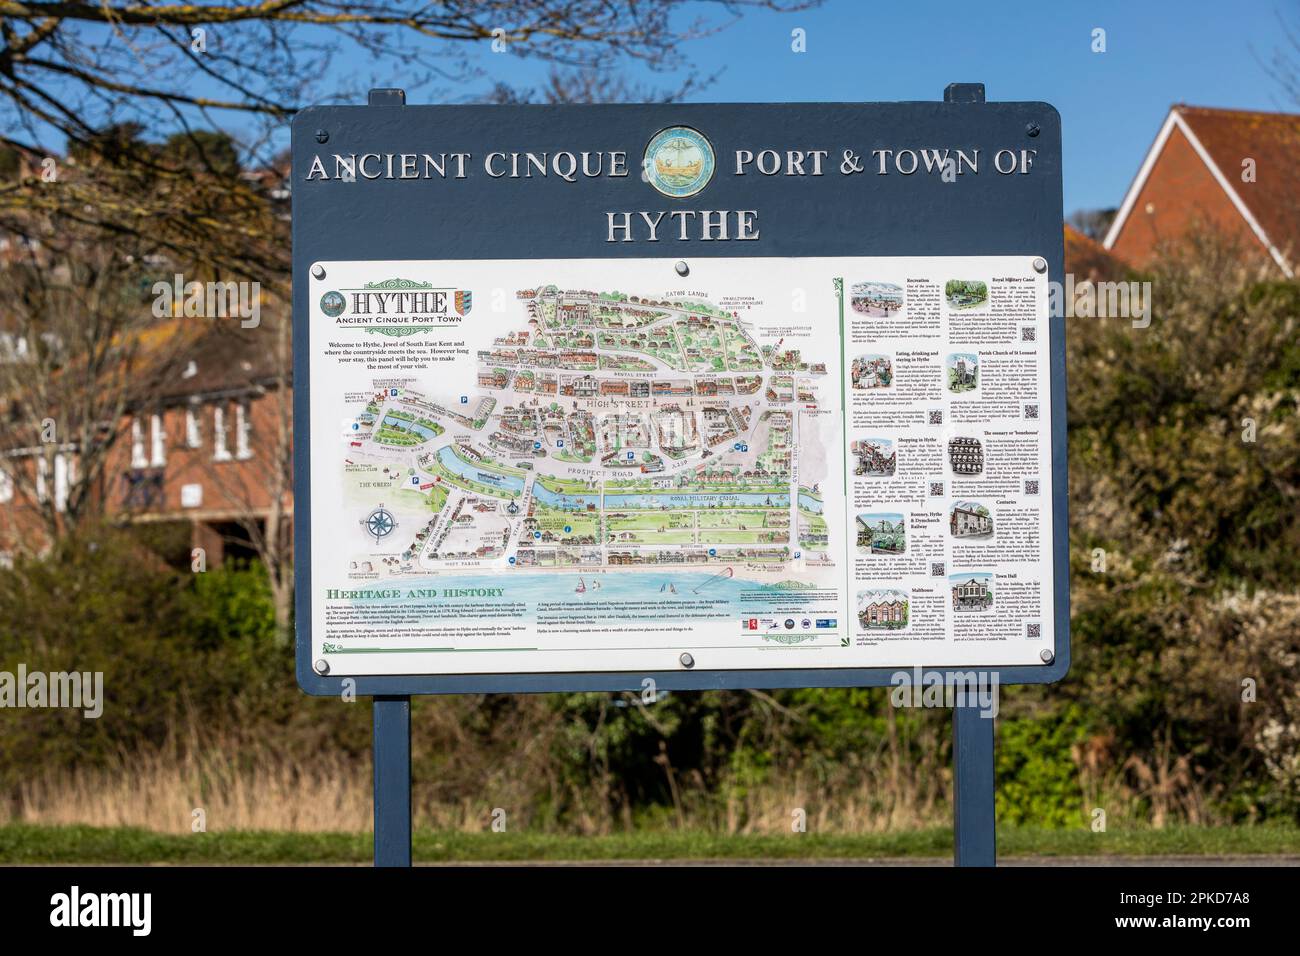 Ein Schild mit einer Karte und Informationen über den antiken Cinque Port und die Stadt Hythe, Kent, Großbritannien Stockfoto